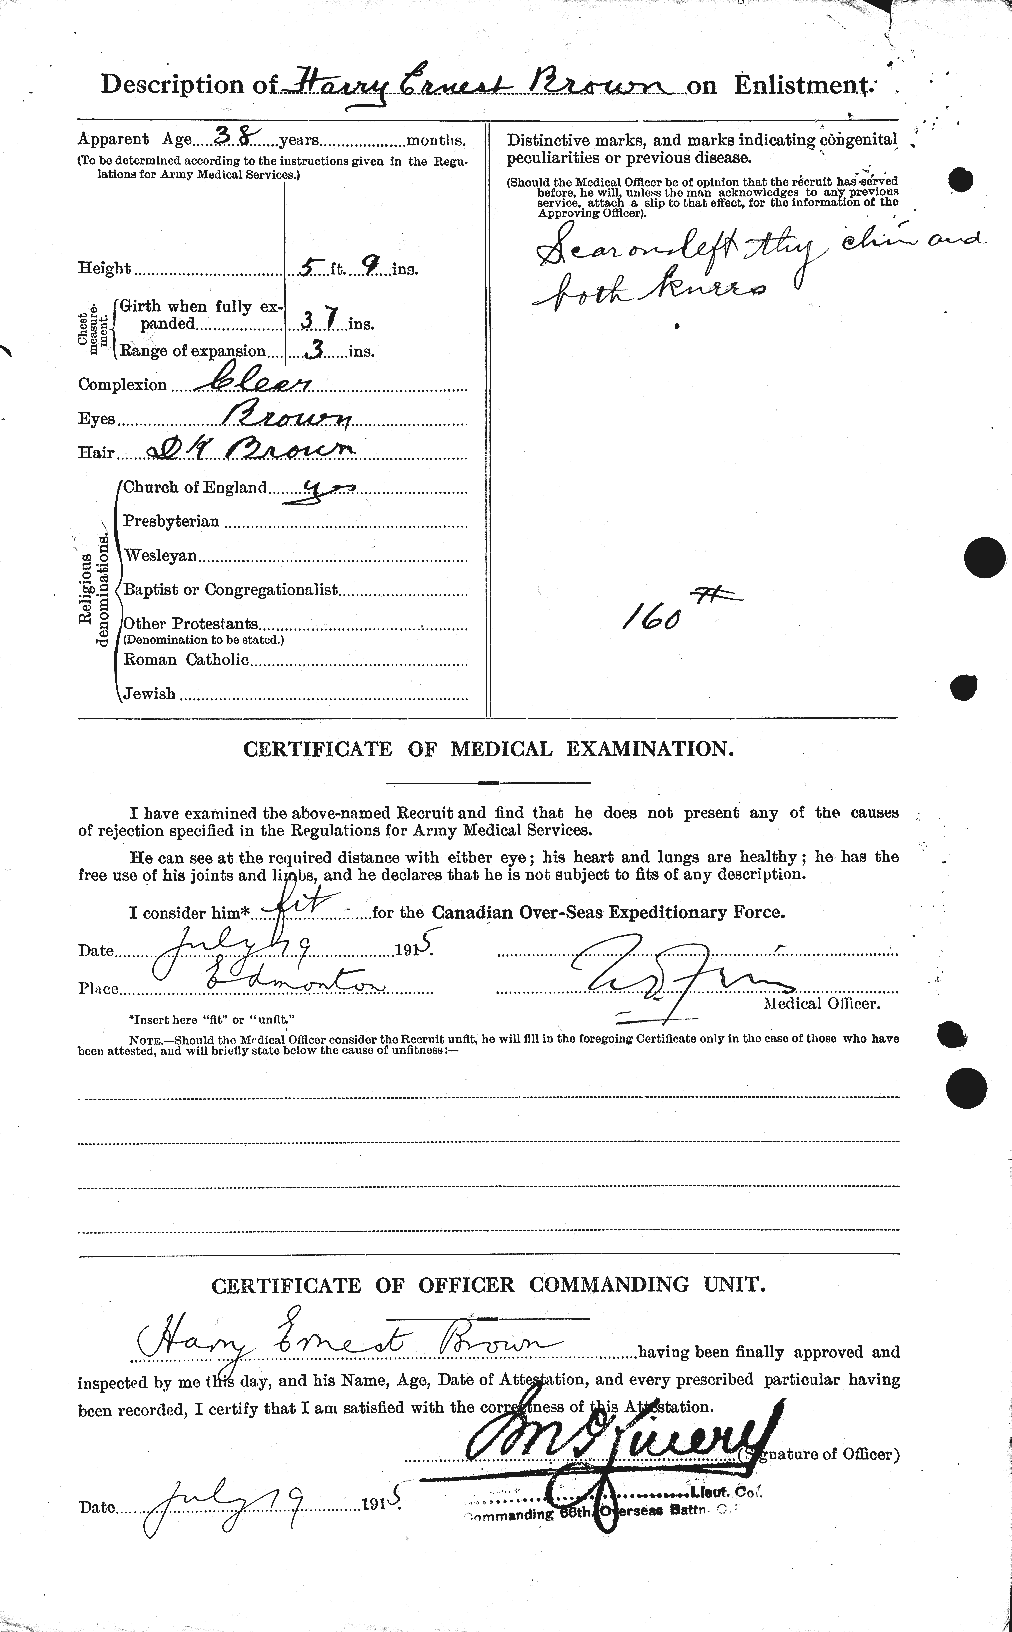 Dossiers du Personnel de la Première Guerre mondiale - CEC 265453b